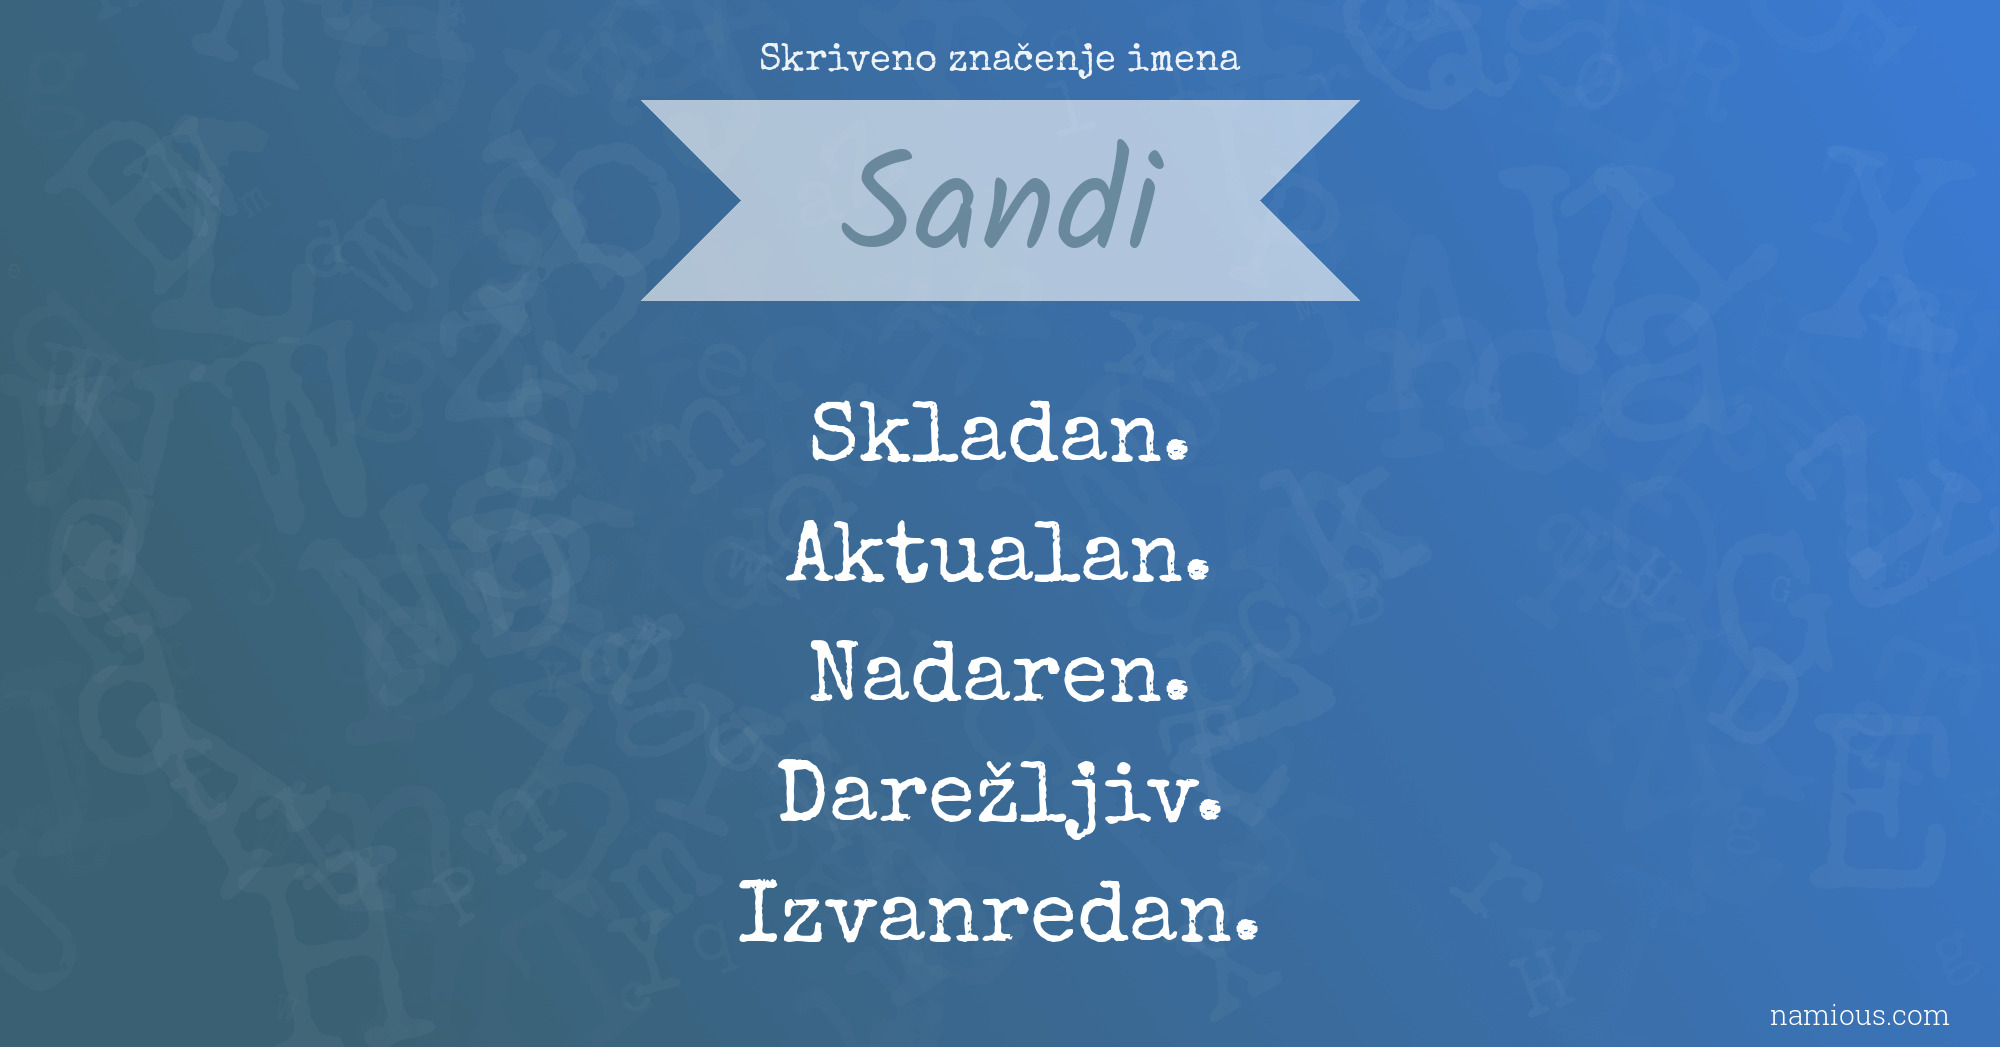 Skriveno značenje imena Sandi